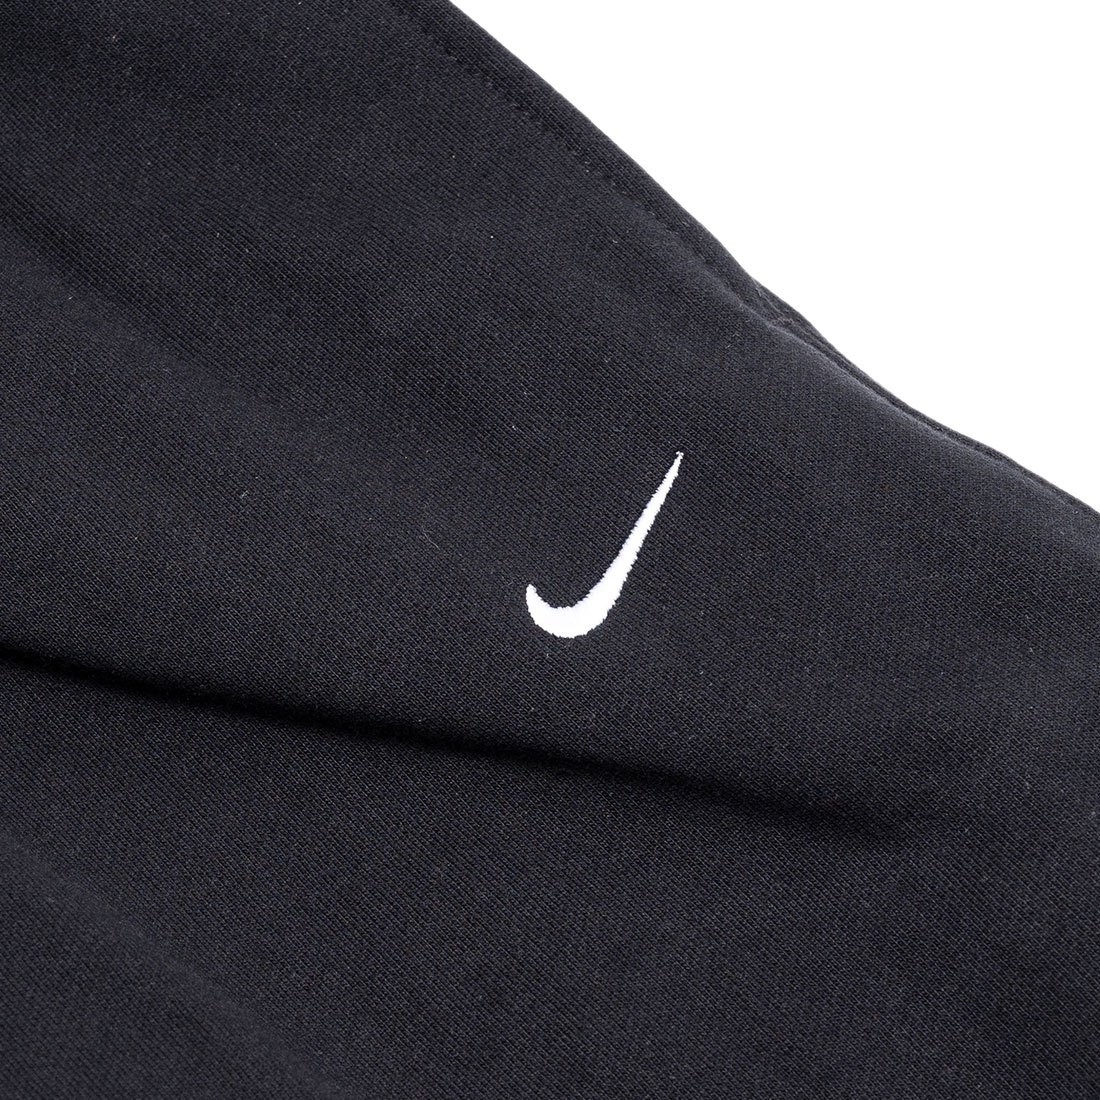 Nike Sportswear Tech Fleece Pant Black/Black Men's - US